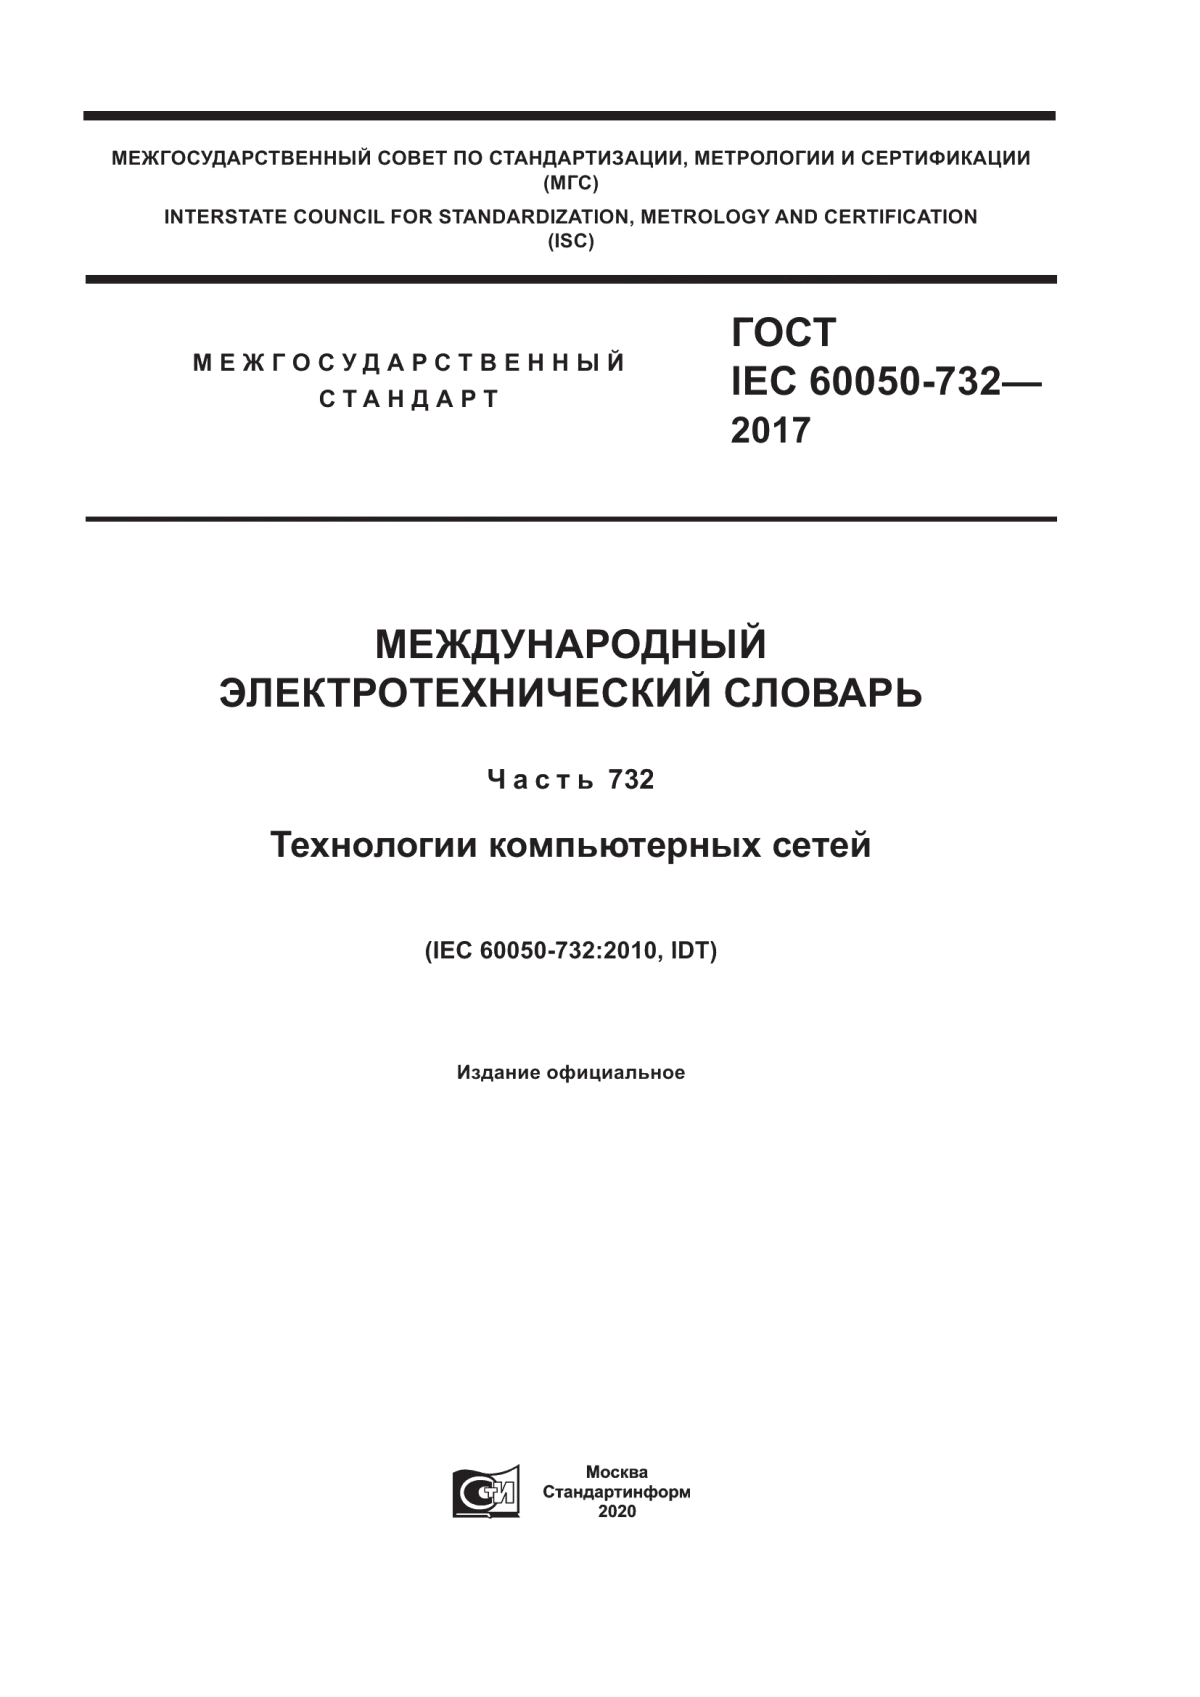 ГОСТ IEC 60050-732-2017 Международный электротехнический словарь. Часть 732. Технологии компьютерных сетей